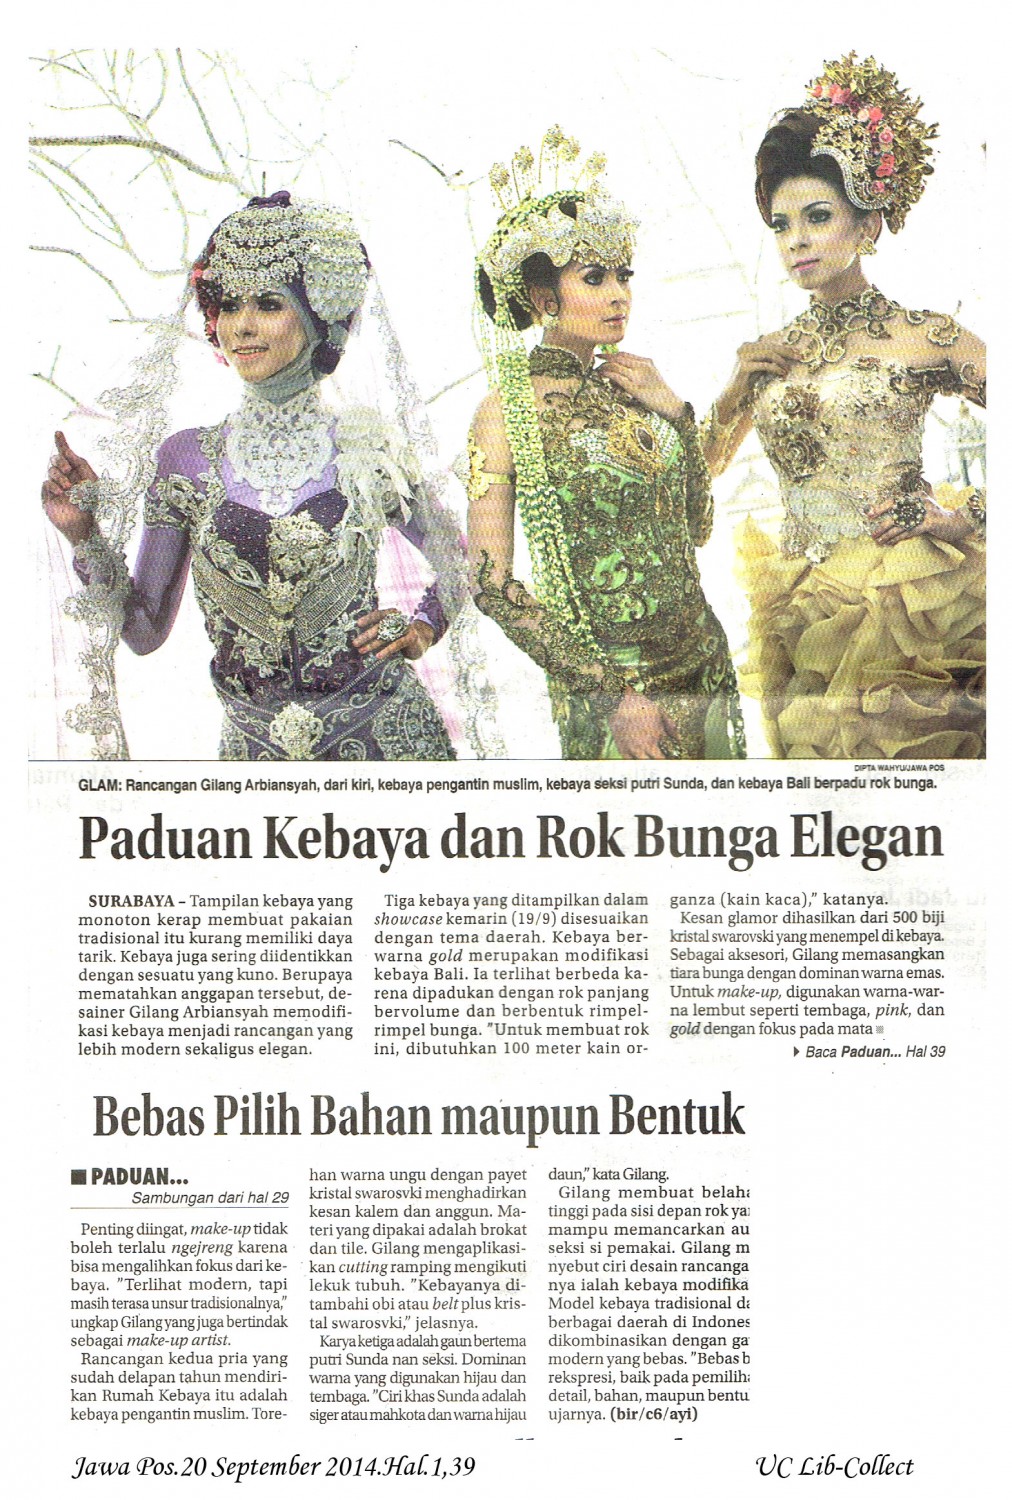 Paduan Kebaya dan Rok Bunga Elegan. Jawa Pos.20 September 2014.Hal.1,39